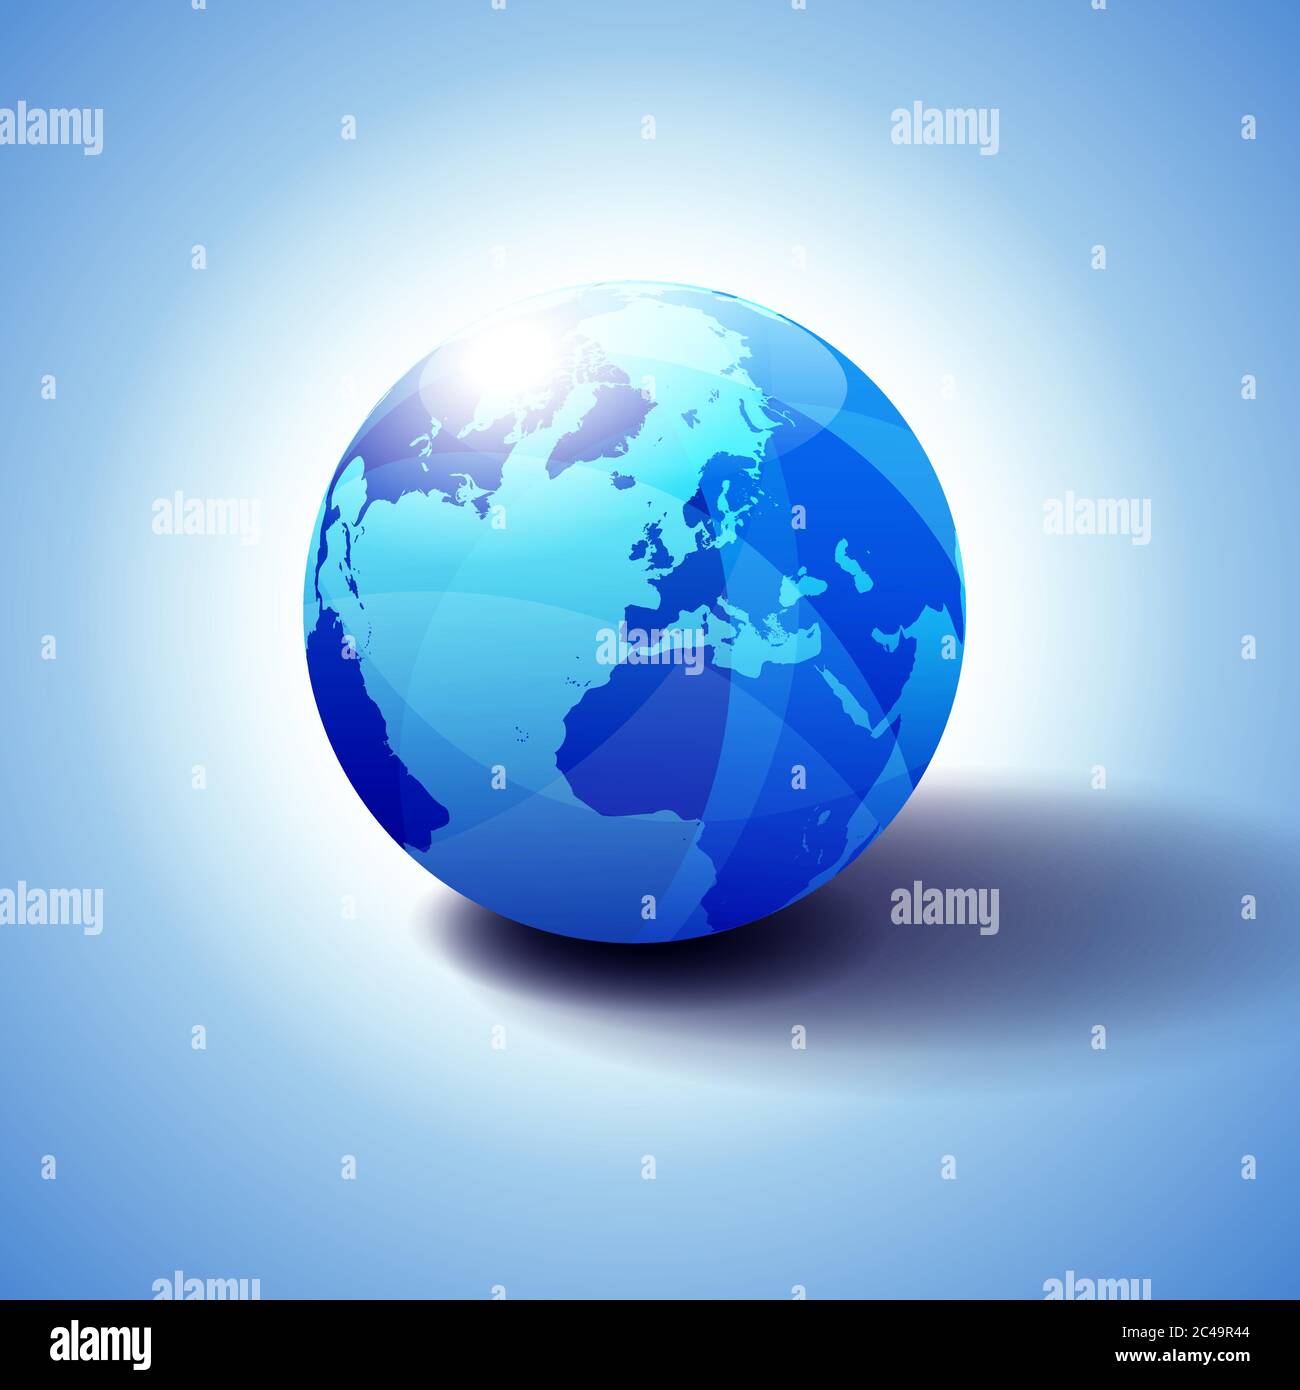 Europe, Russie et Afrique, monde mondial, Globe Icon 3D illustration, brillant, sphère brillante avec Global Map en bleu subtil donnant une sensation de transparence Illustration de Vecteur